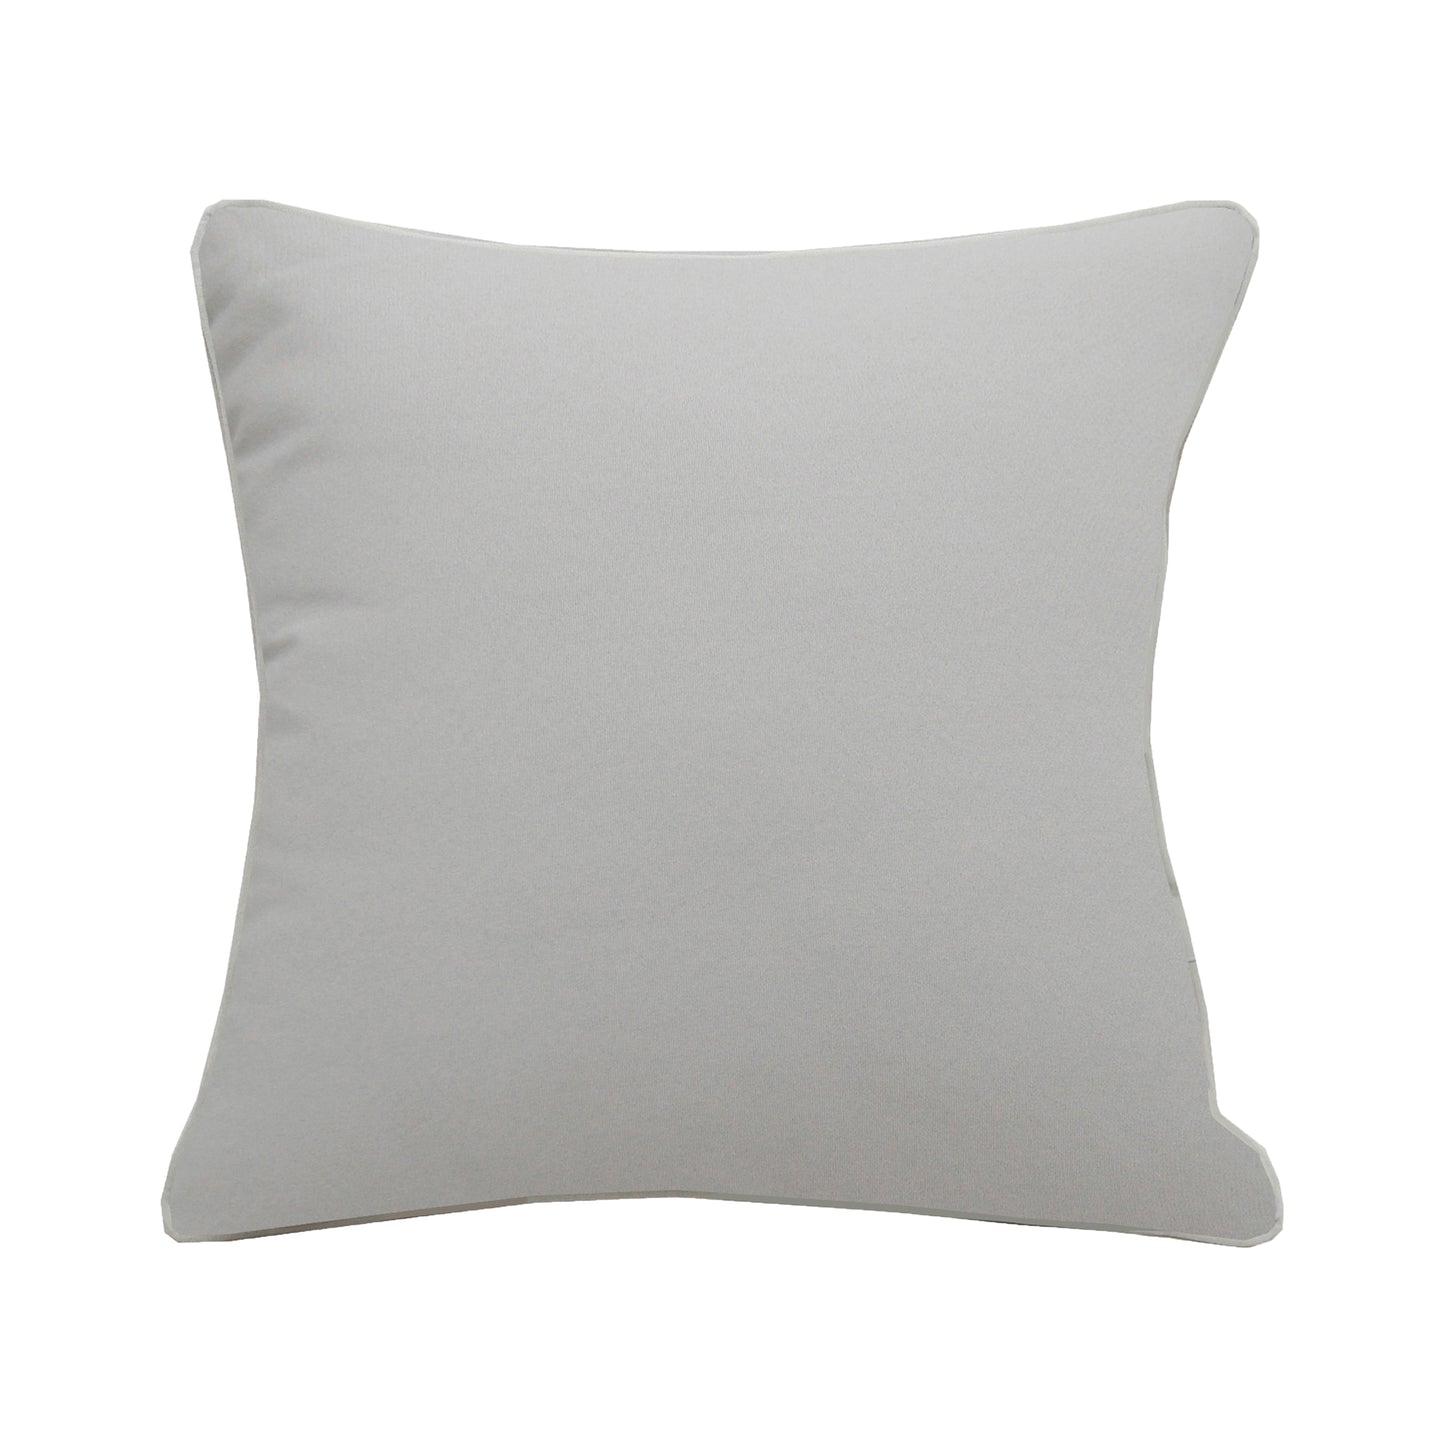 Solid grey fabric; bath of the Sunbathing Brown Pelican Indoor Outdoor pillow.